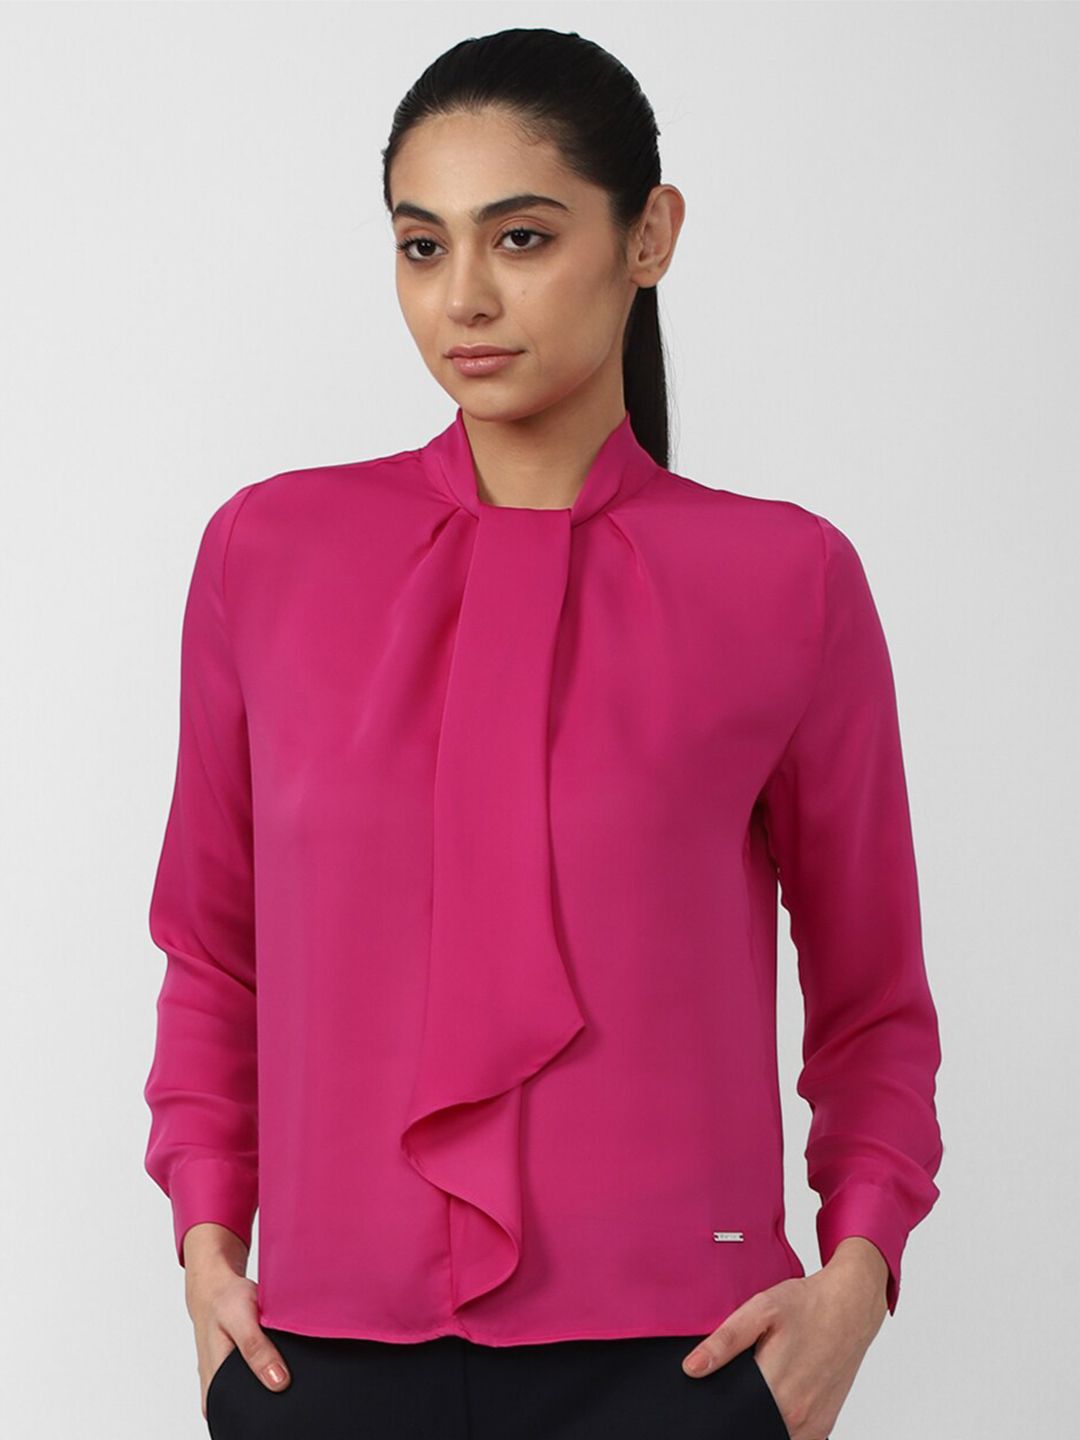 Van Heusen Woman Women Pink Tie-Up Neck Top Price in India